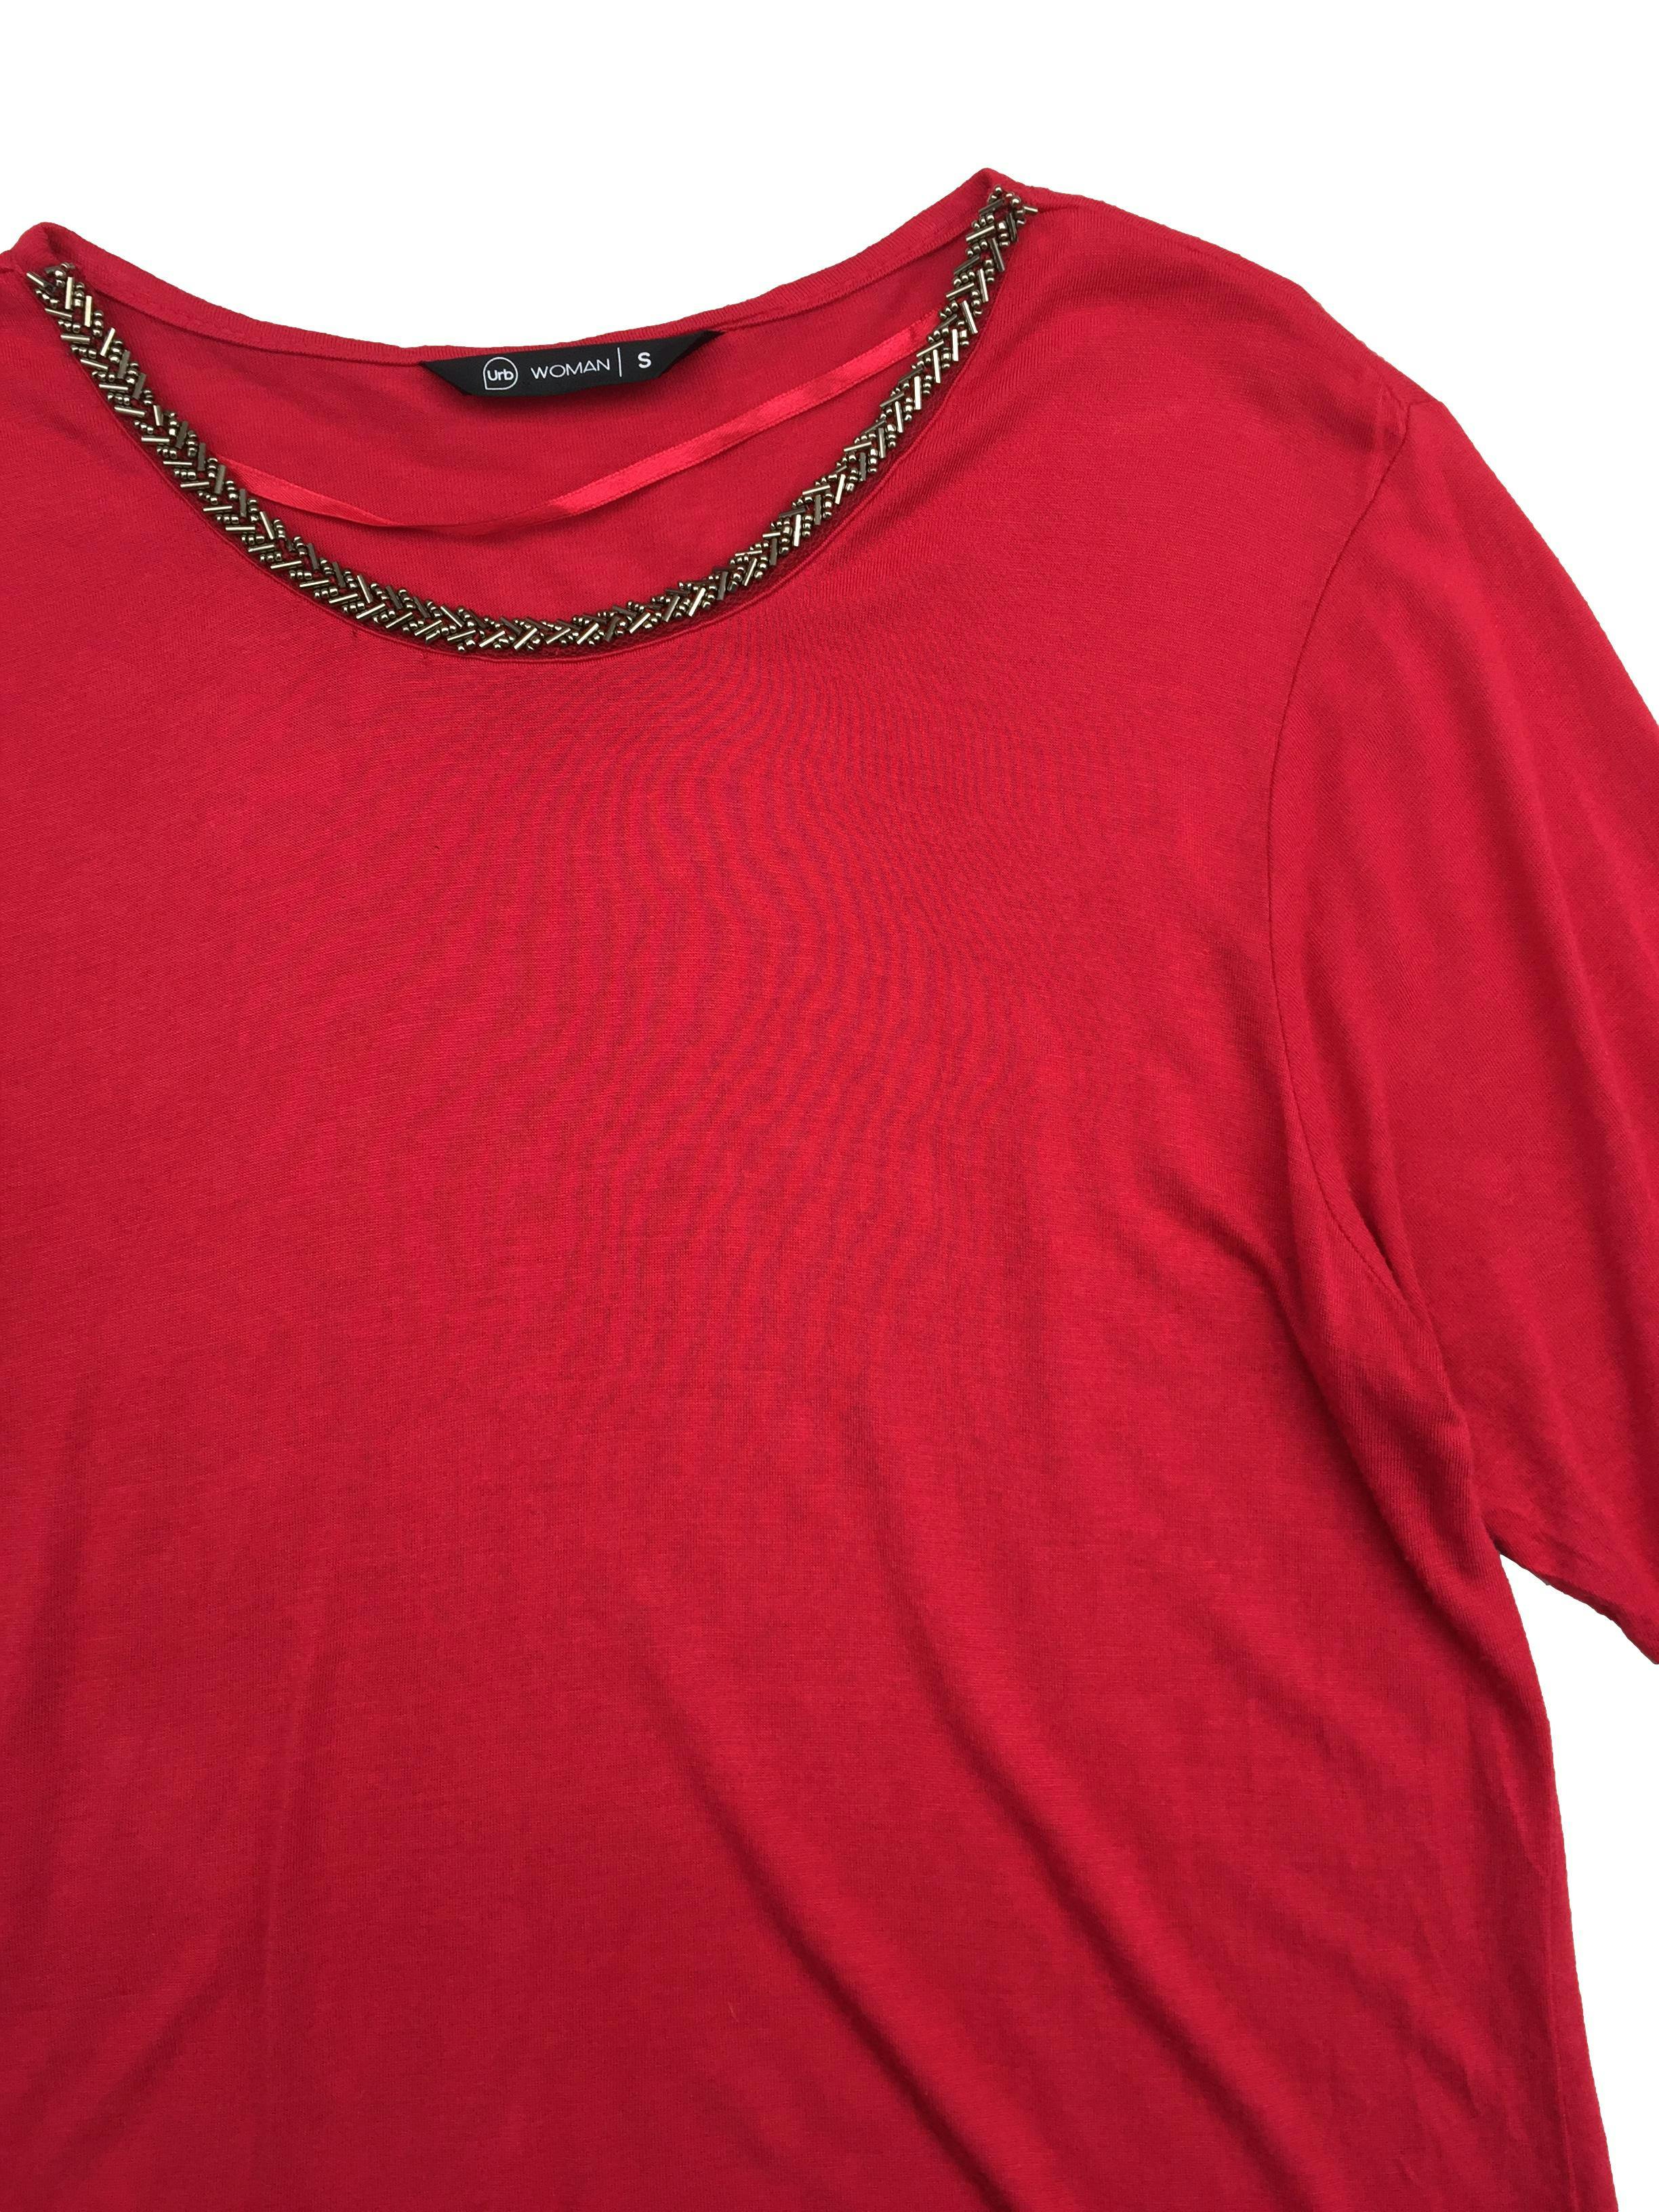 Polo rojo manga corta con mostacillas en el cuello. Busto: 96cm, Largo: 61cm